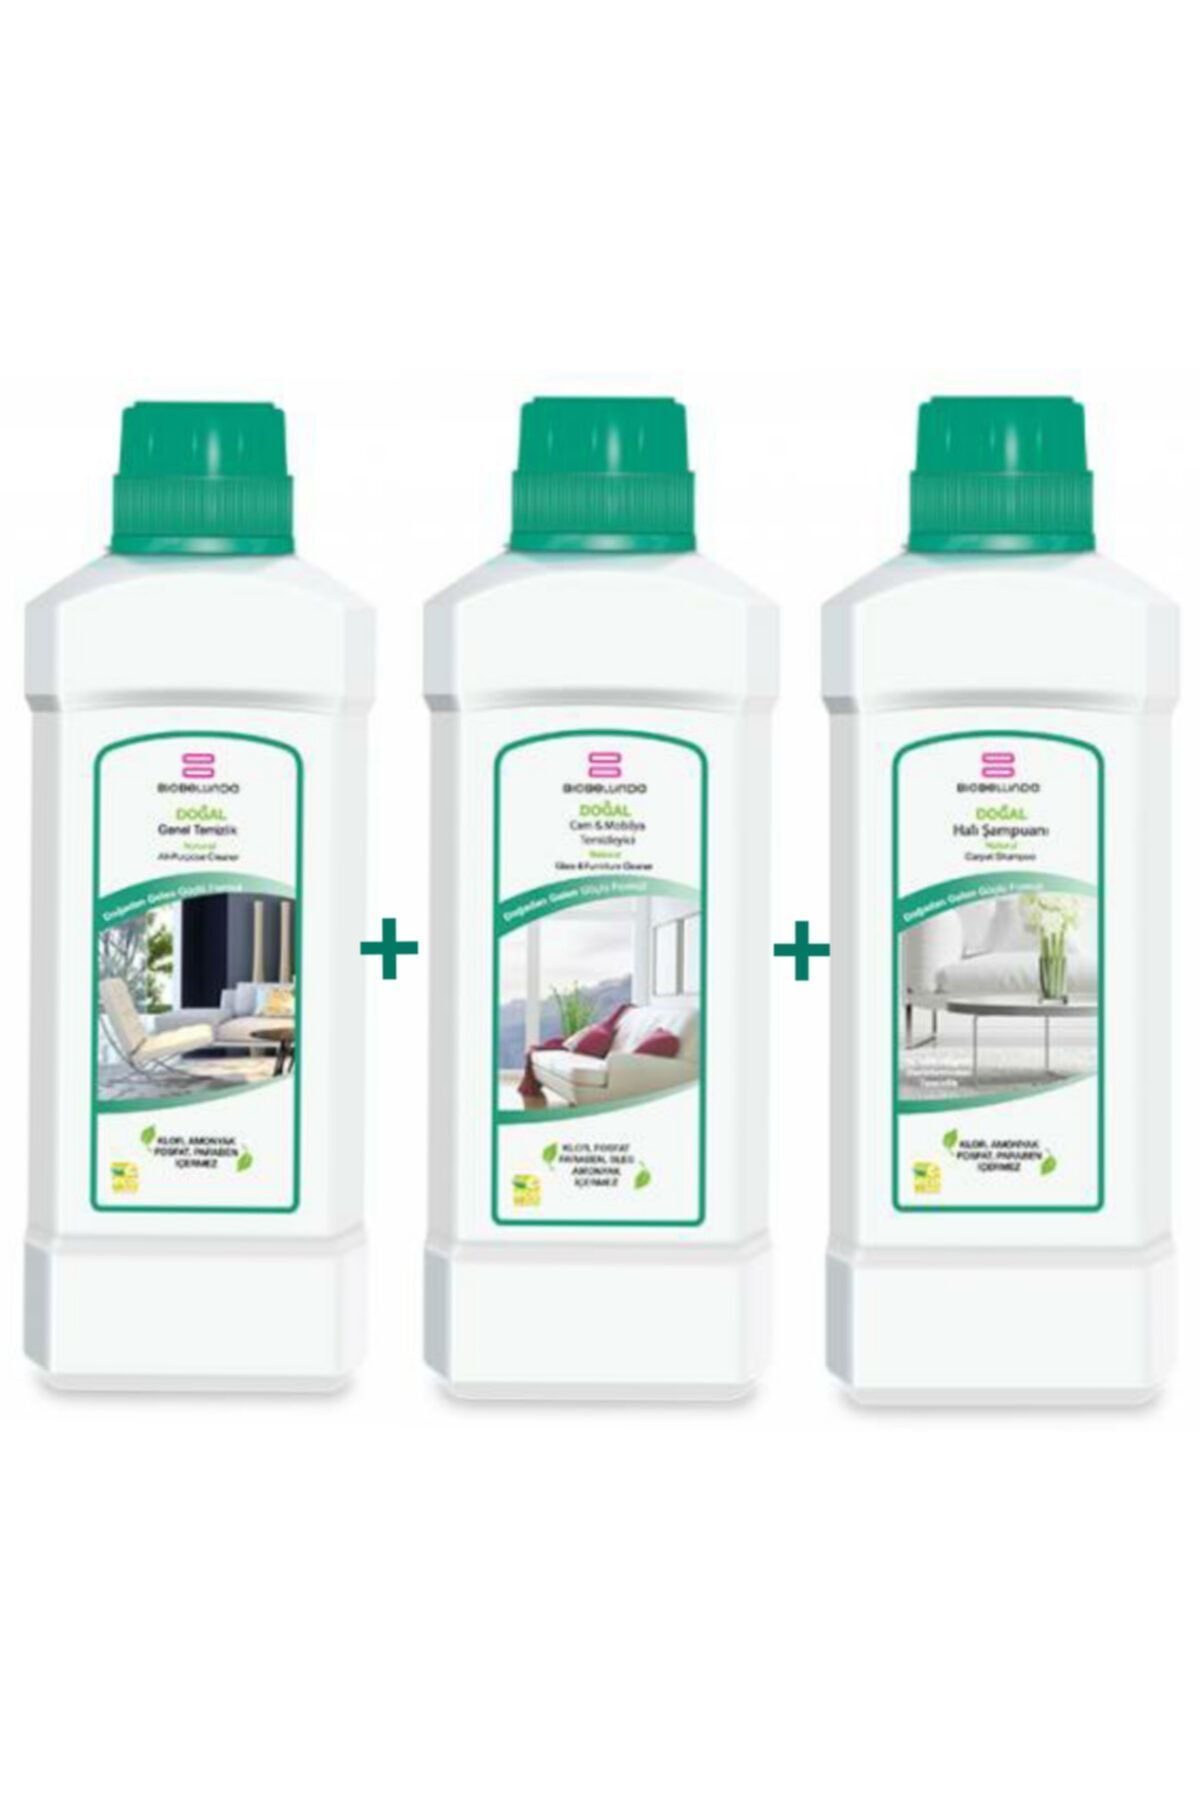 BioBellinda Genel Temizlik Cam Ve Mobilya Temizleyici Ve Halı Şampuanı 1000ml X3 'lü Set